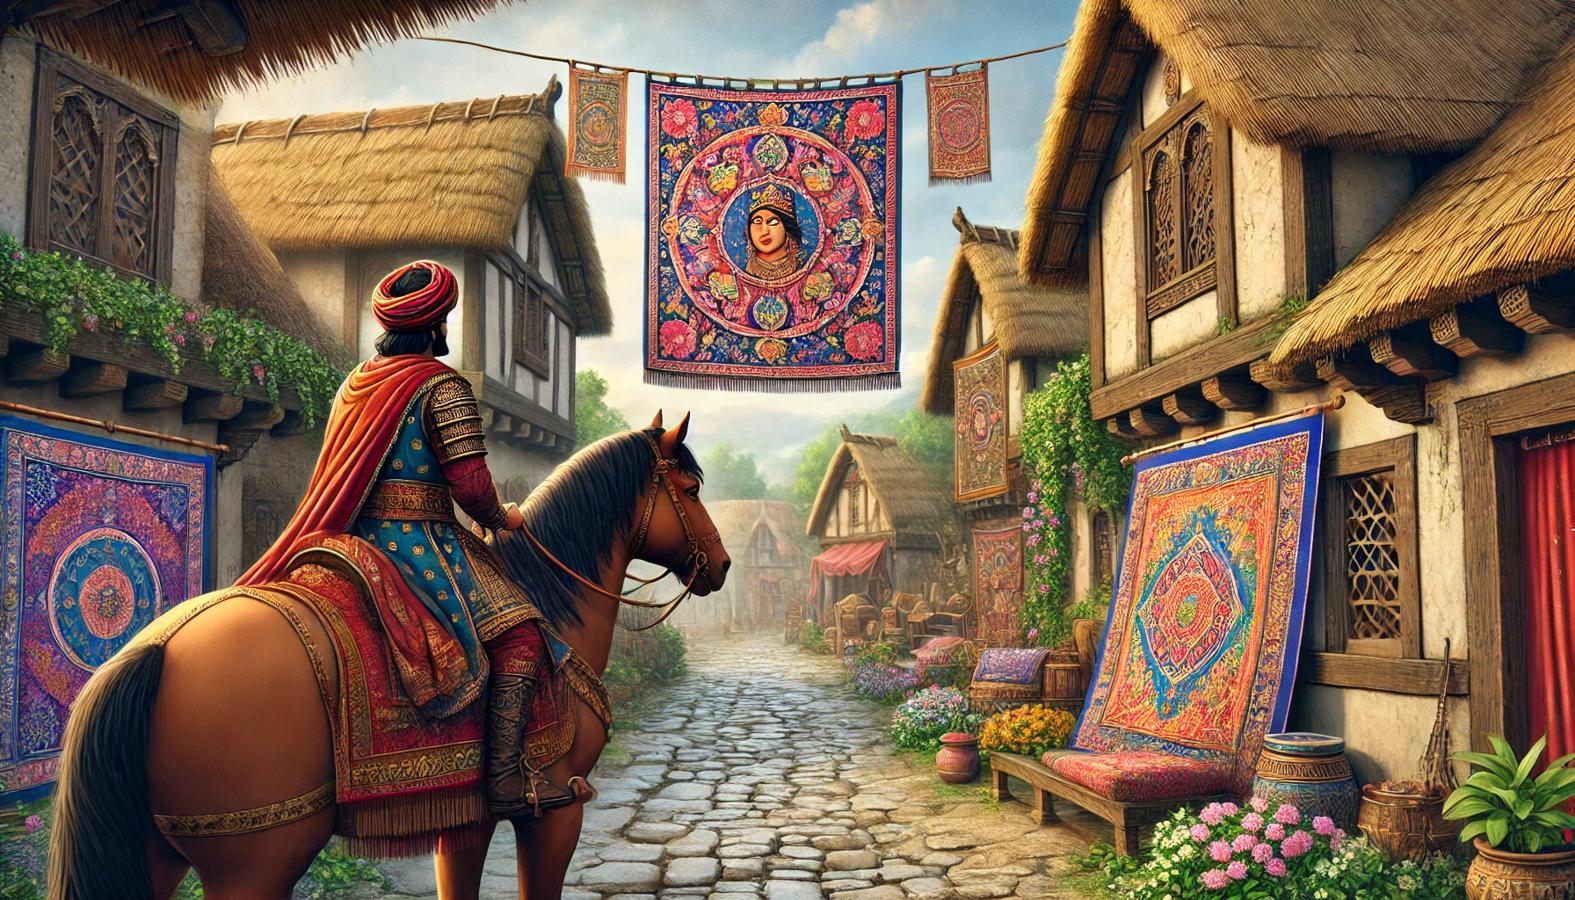 King Arnav on horseback observing tapestries in Raghav